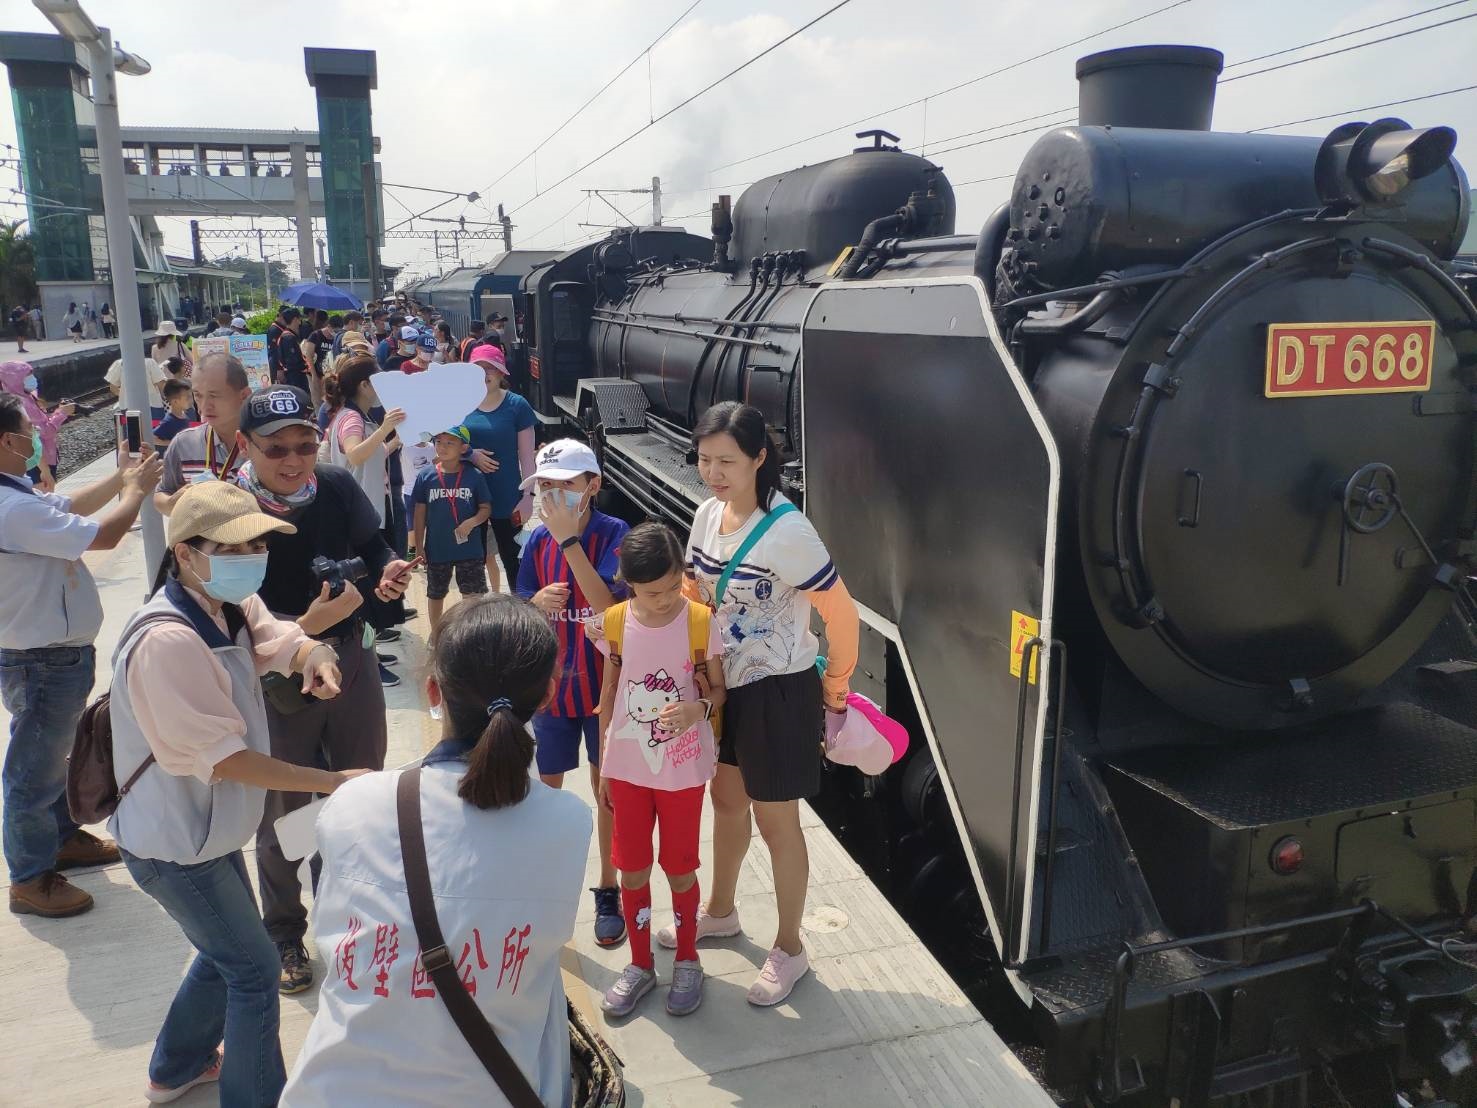 「蒸汽火車之王」DT668國王號前年10月18日停靠台南後壁火車站盛況。記者謝進盛／攝影 